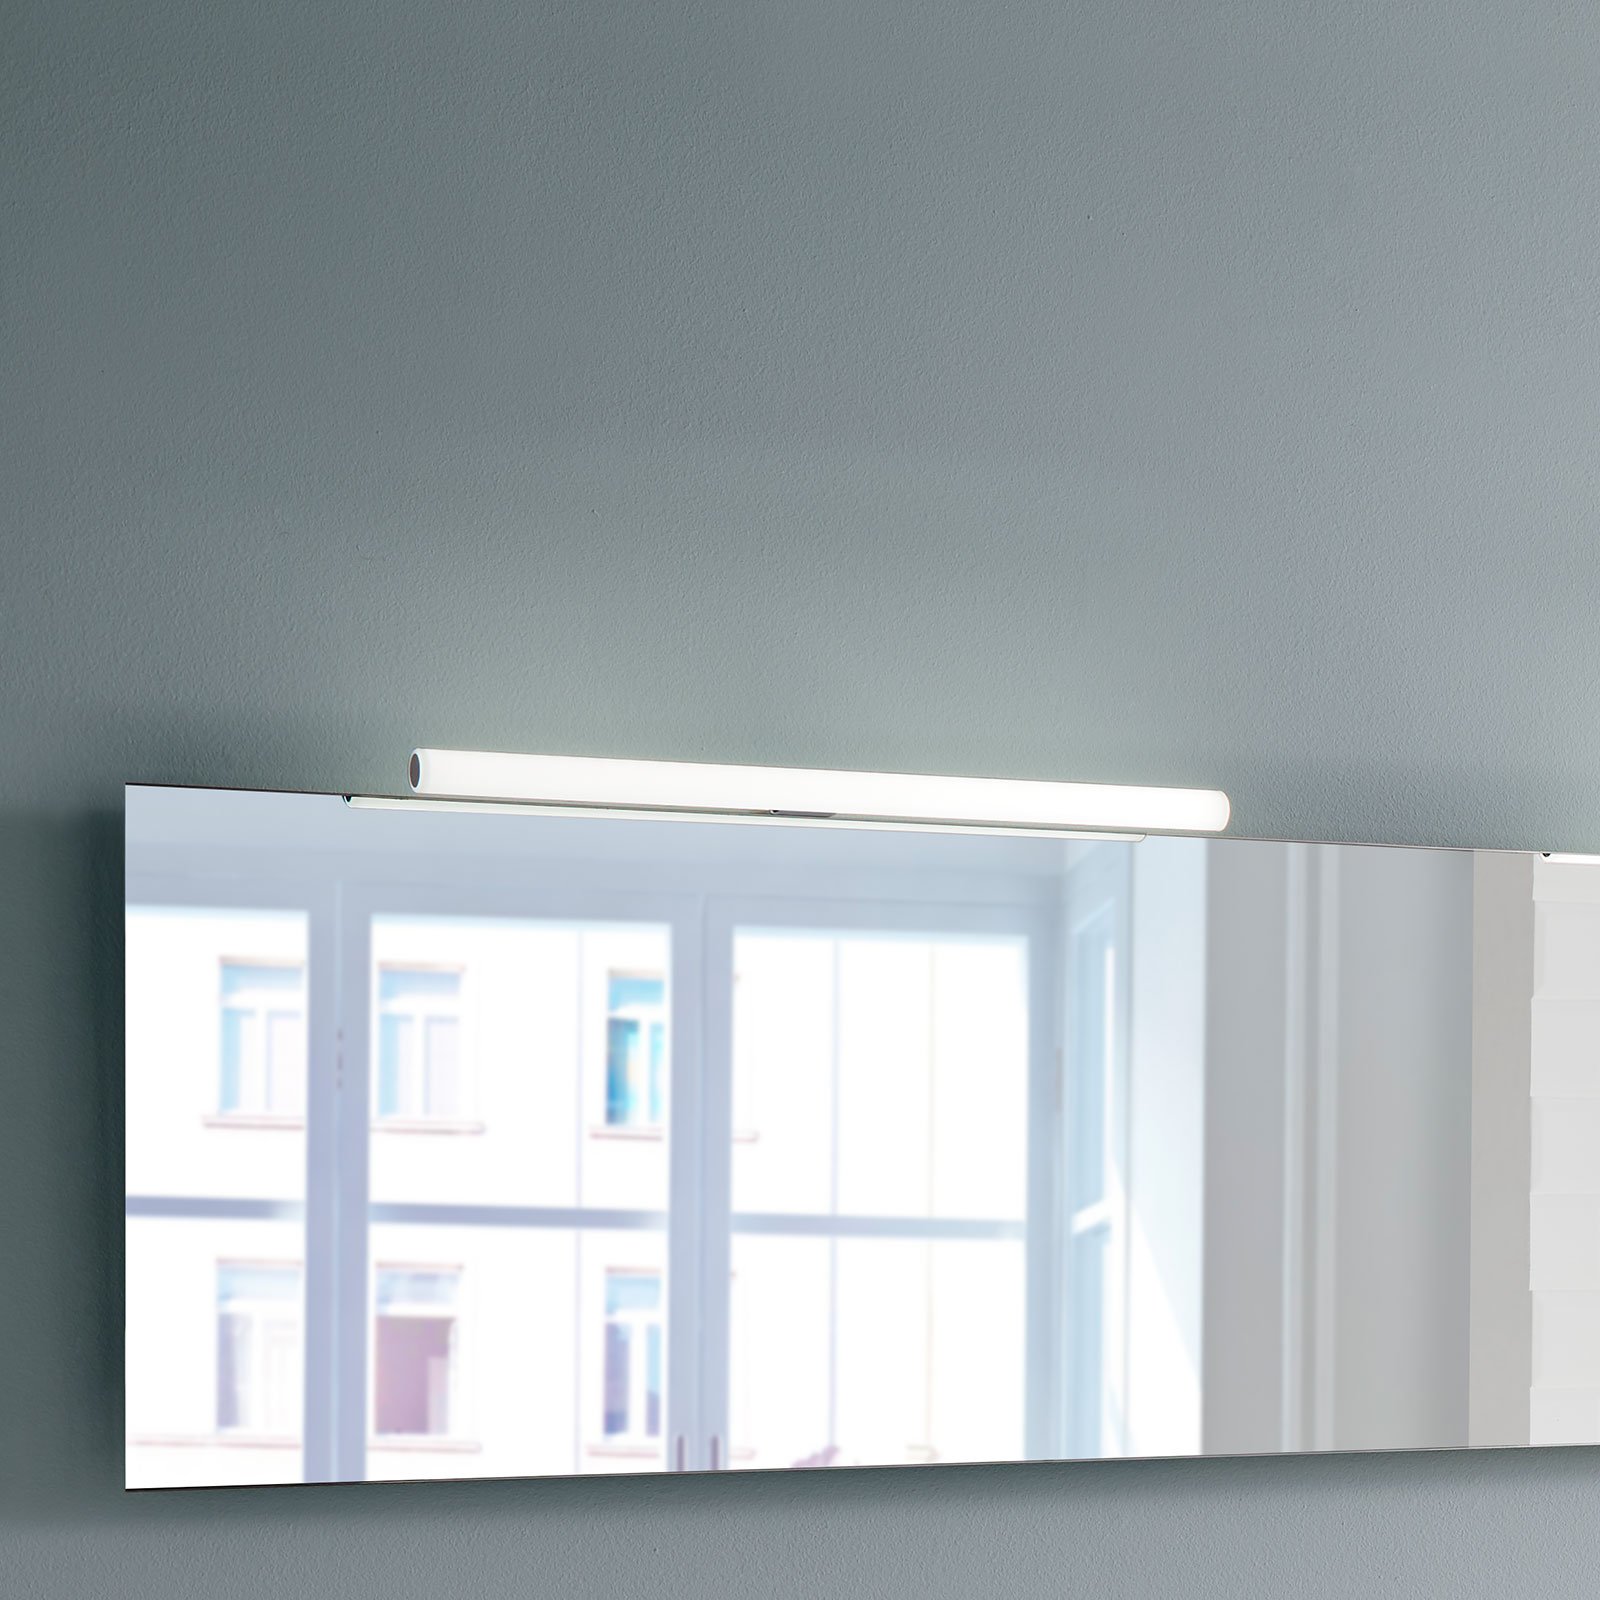 LED svjetiljka za ogledalo Irene 2, širine 80 cm